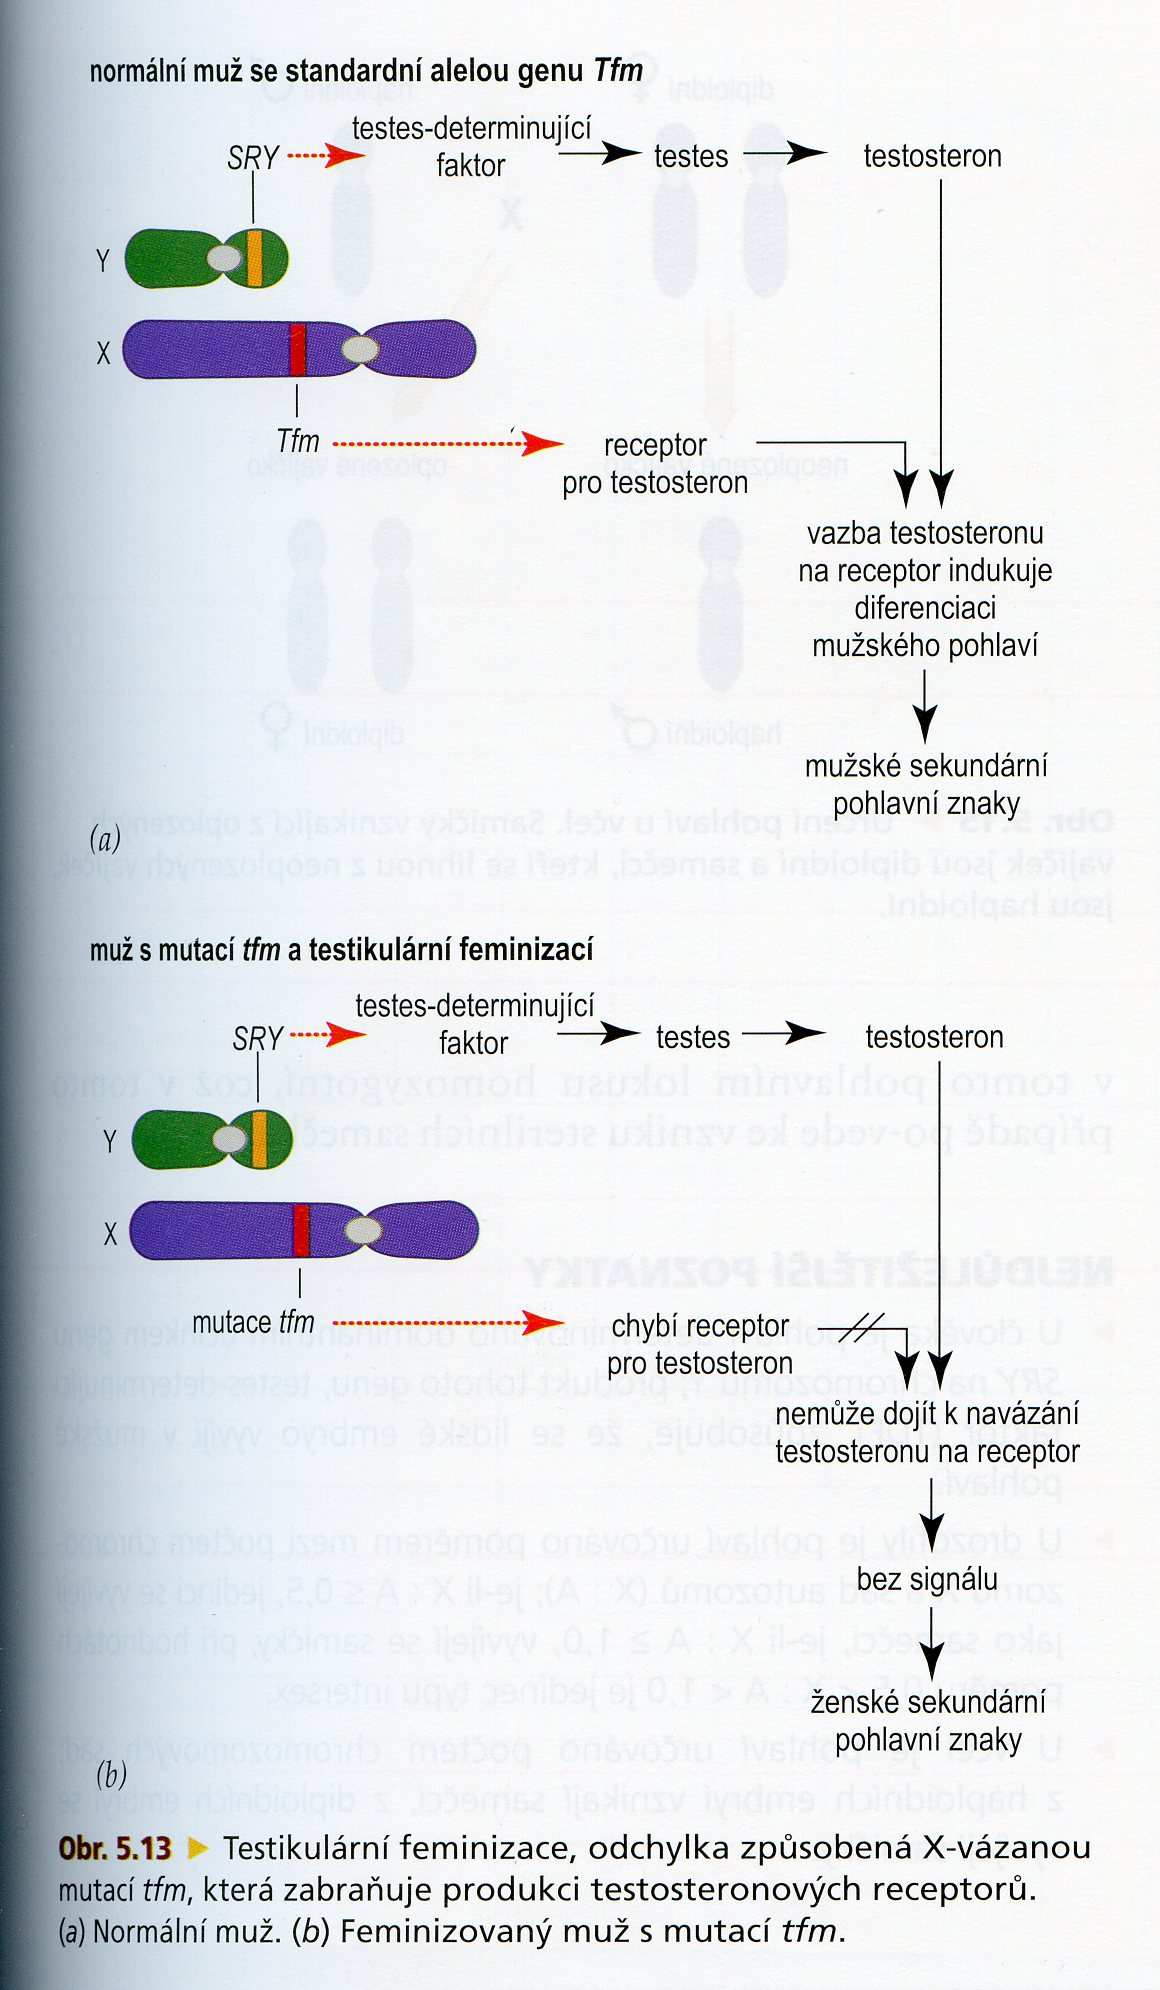 46,XYfemale další možnosti vzniku deleceči mutace genu Tfm na chromosomu X kóduje receptory pro testosteron rezistence cílových orgánů k androgenům (SRY gen